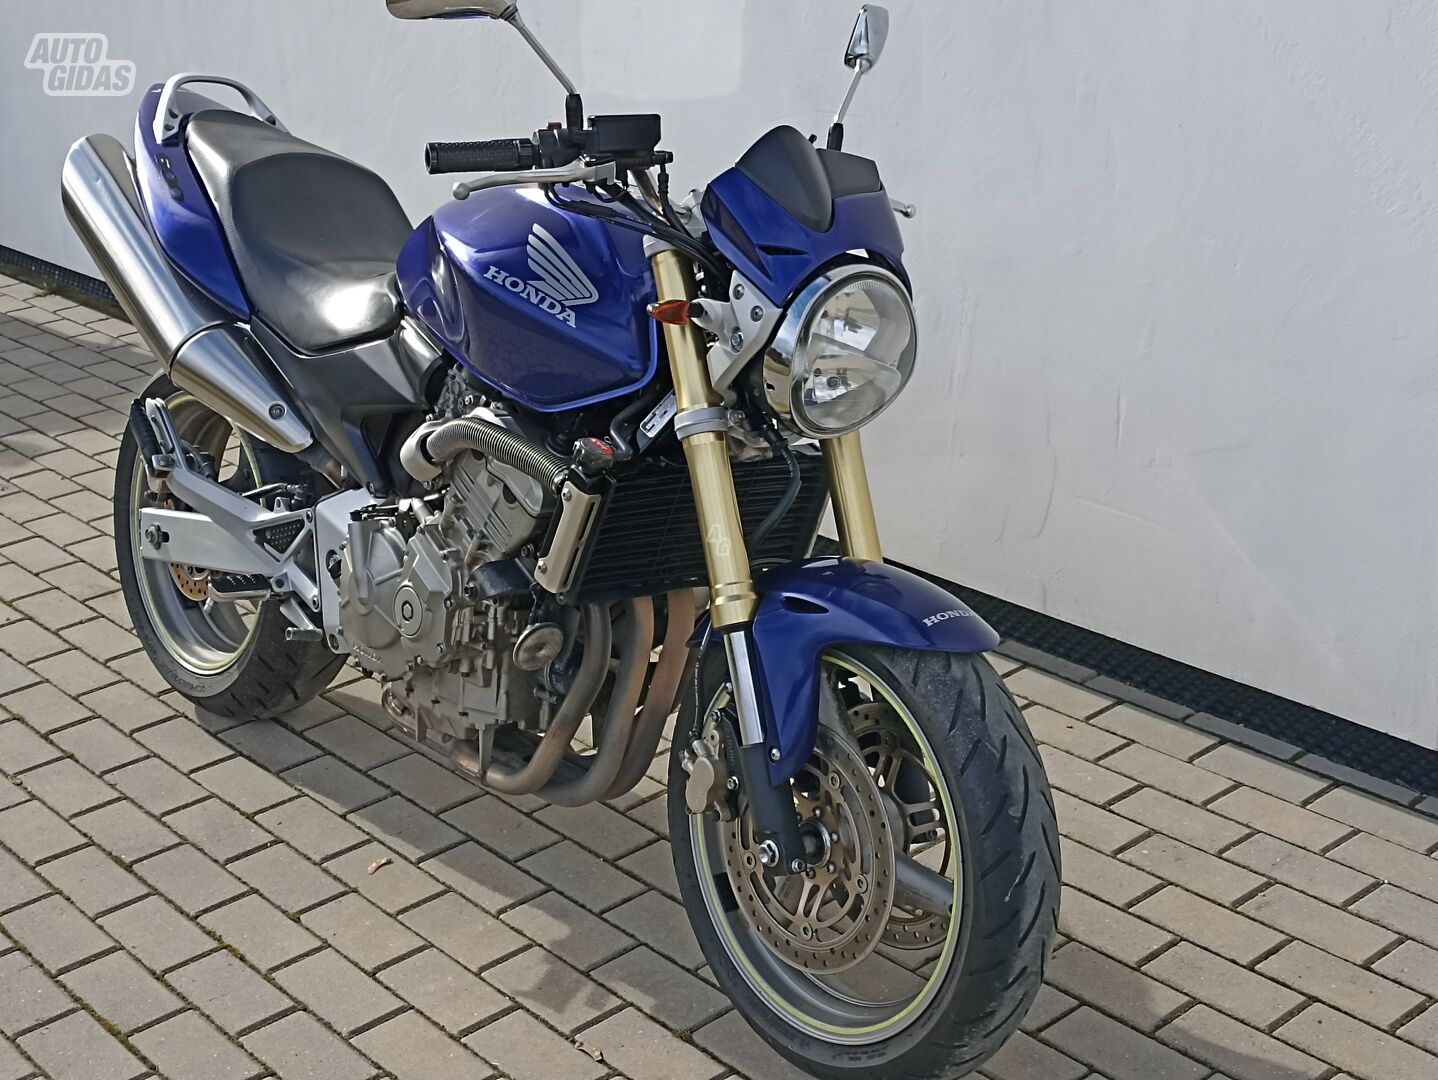 Honda Hornet 2006 y Classical / Streetbike motorcycle